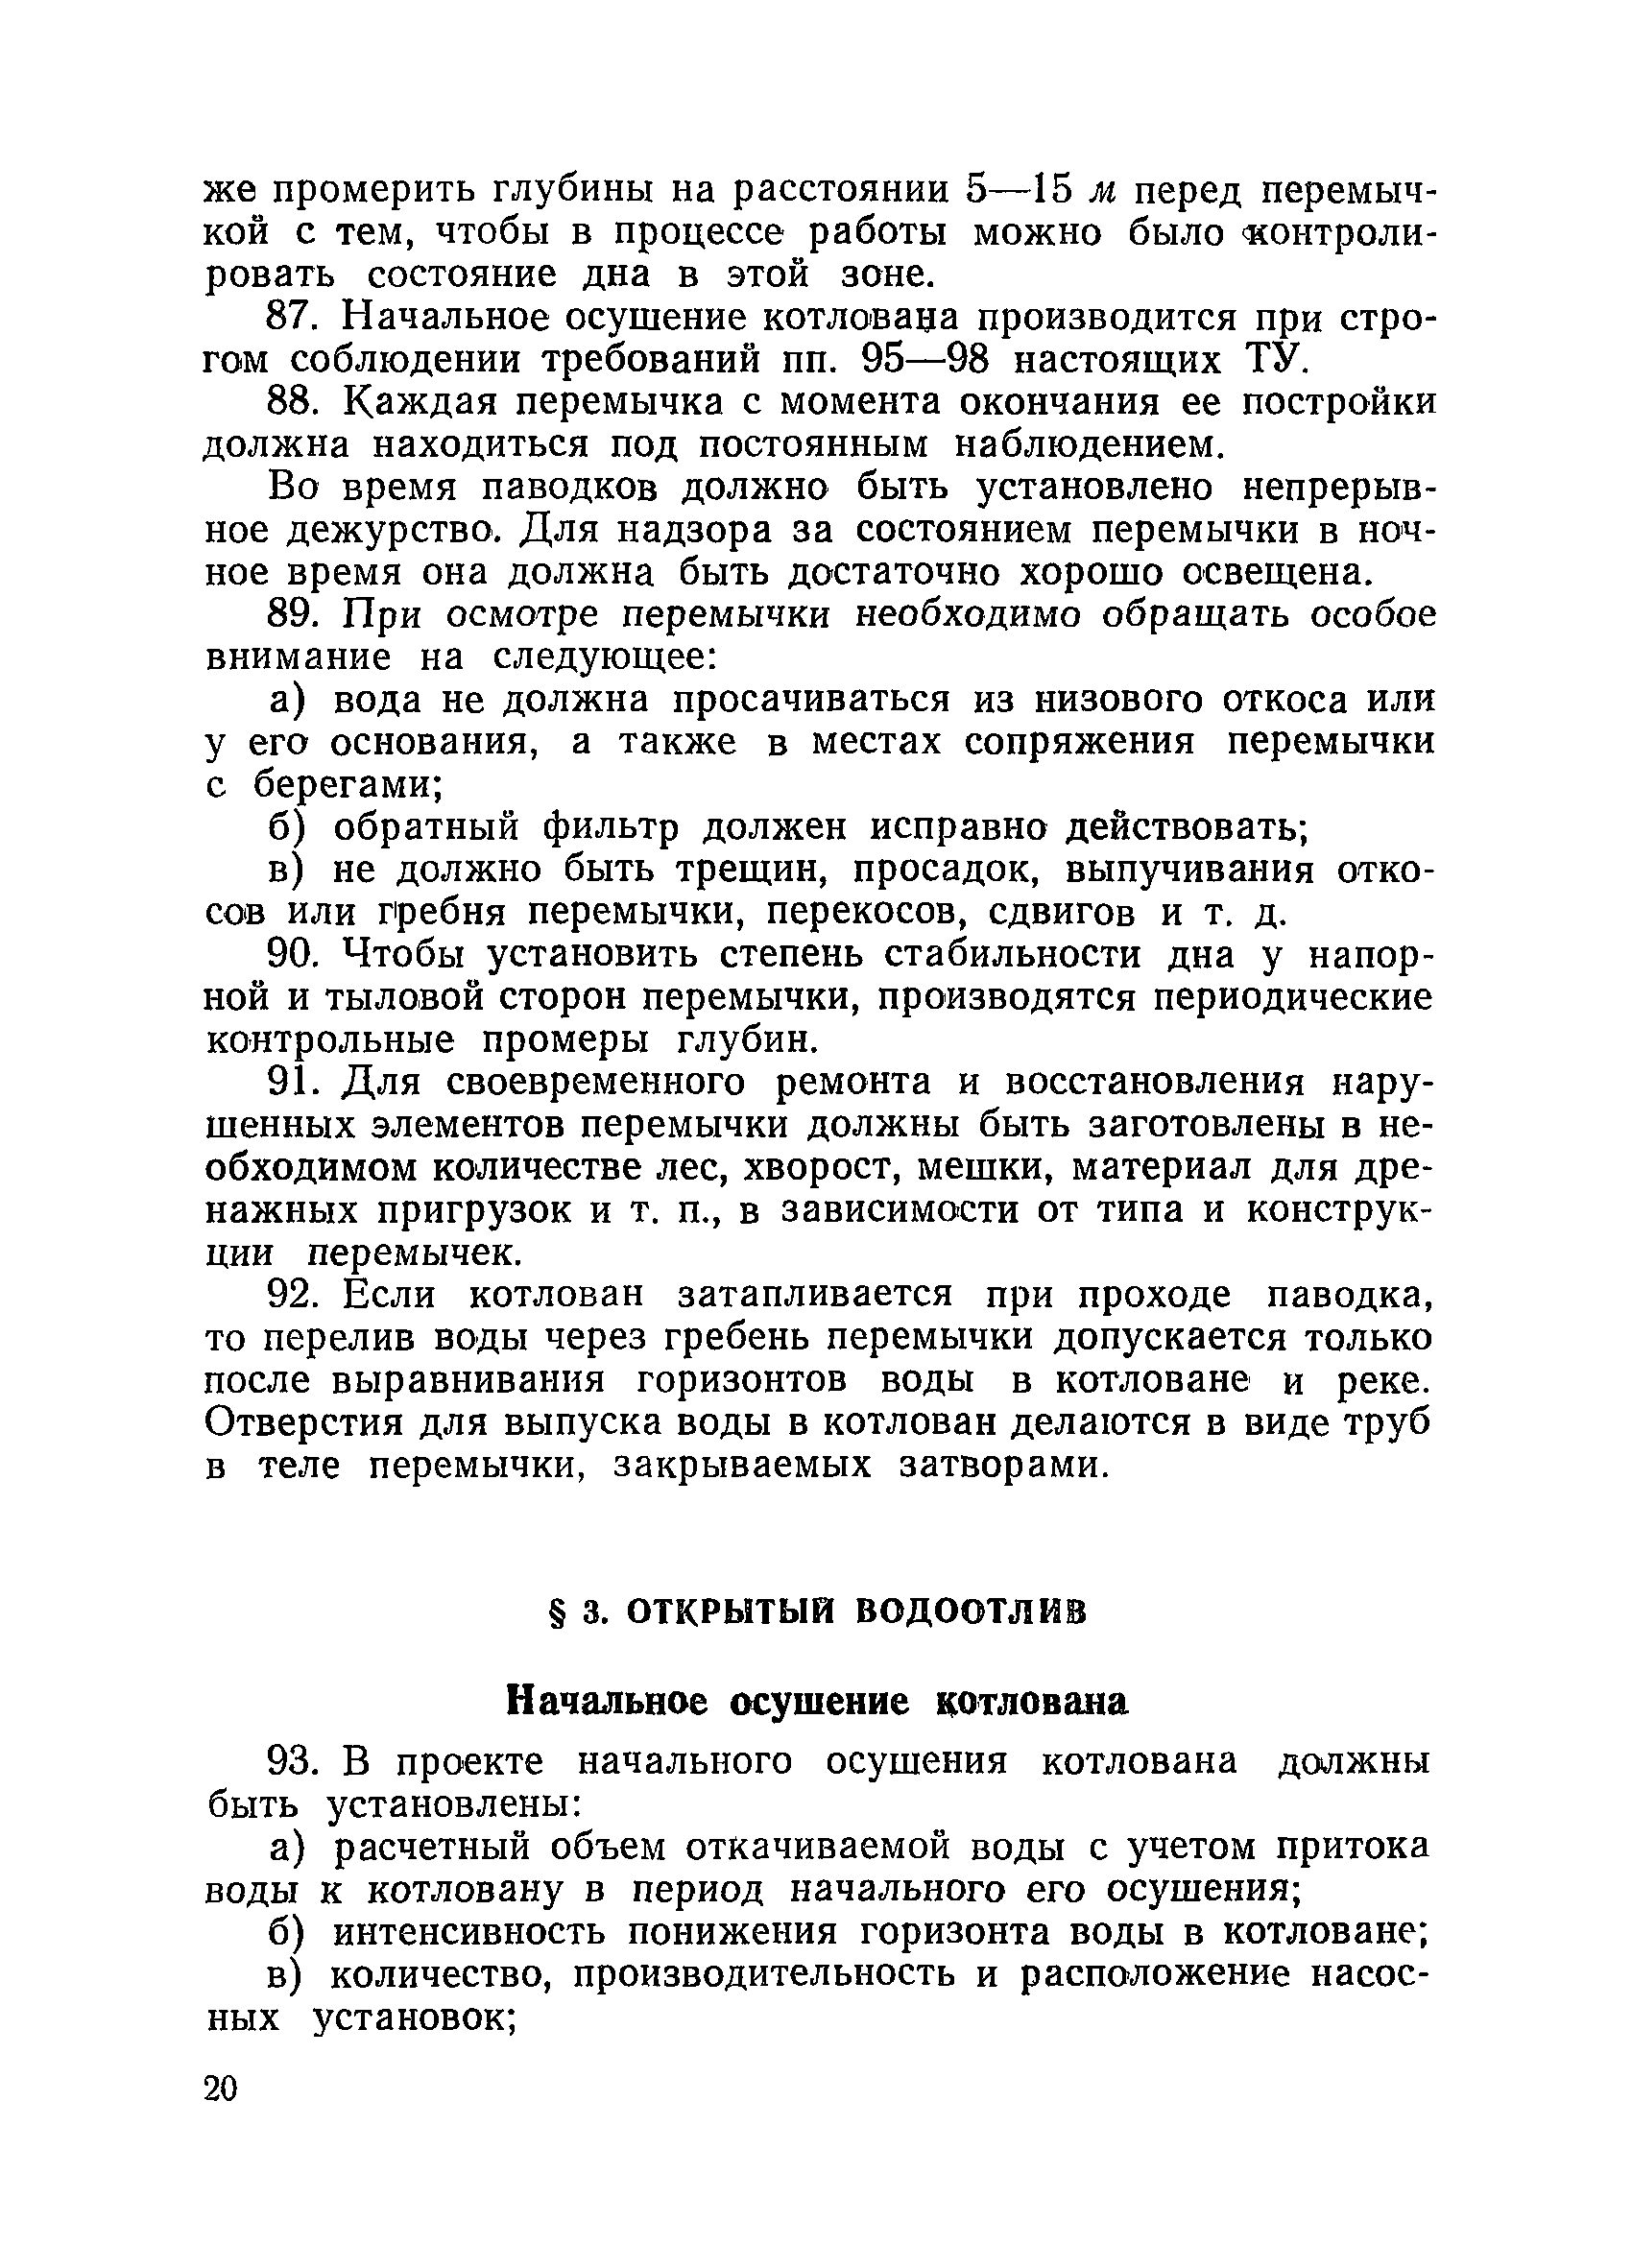 ВСН 34/XVII-60